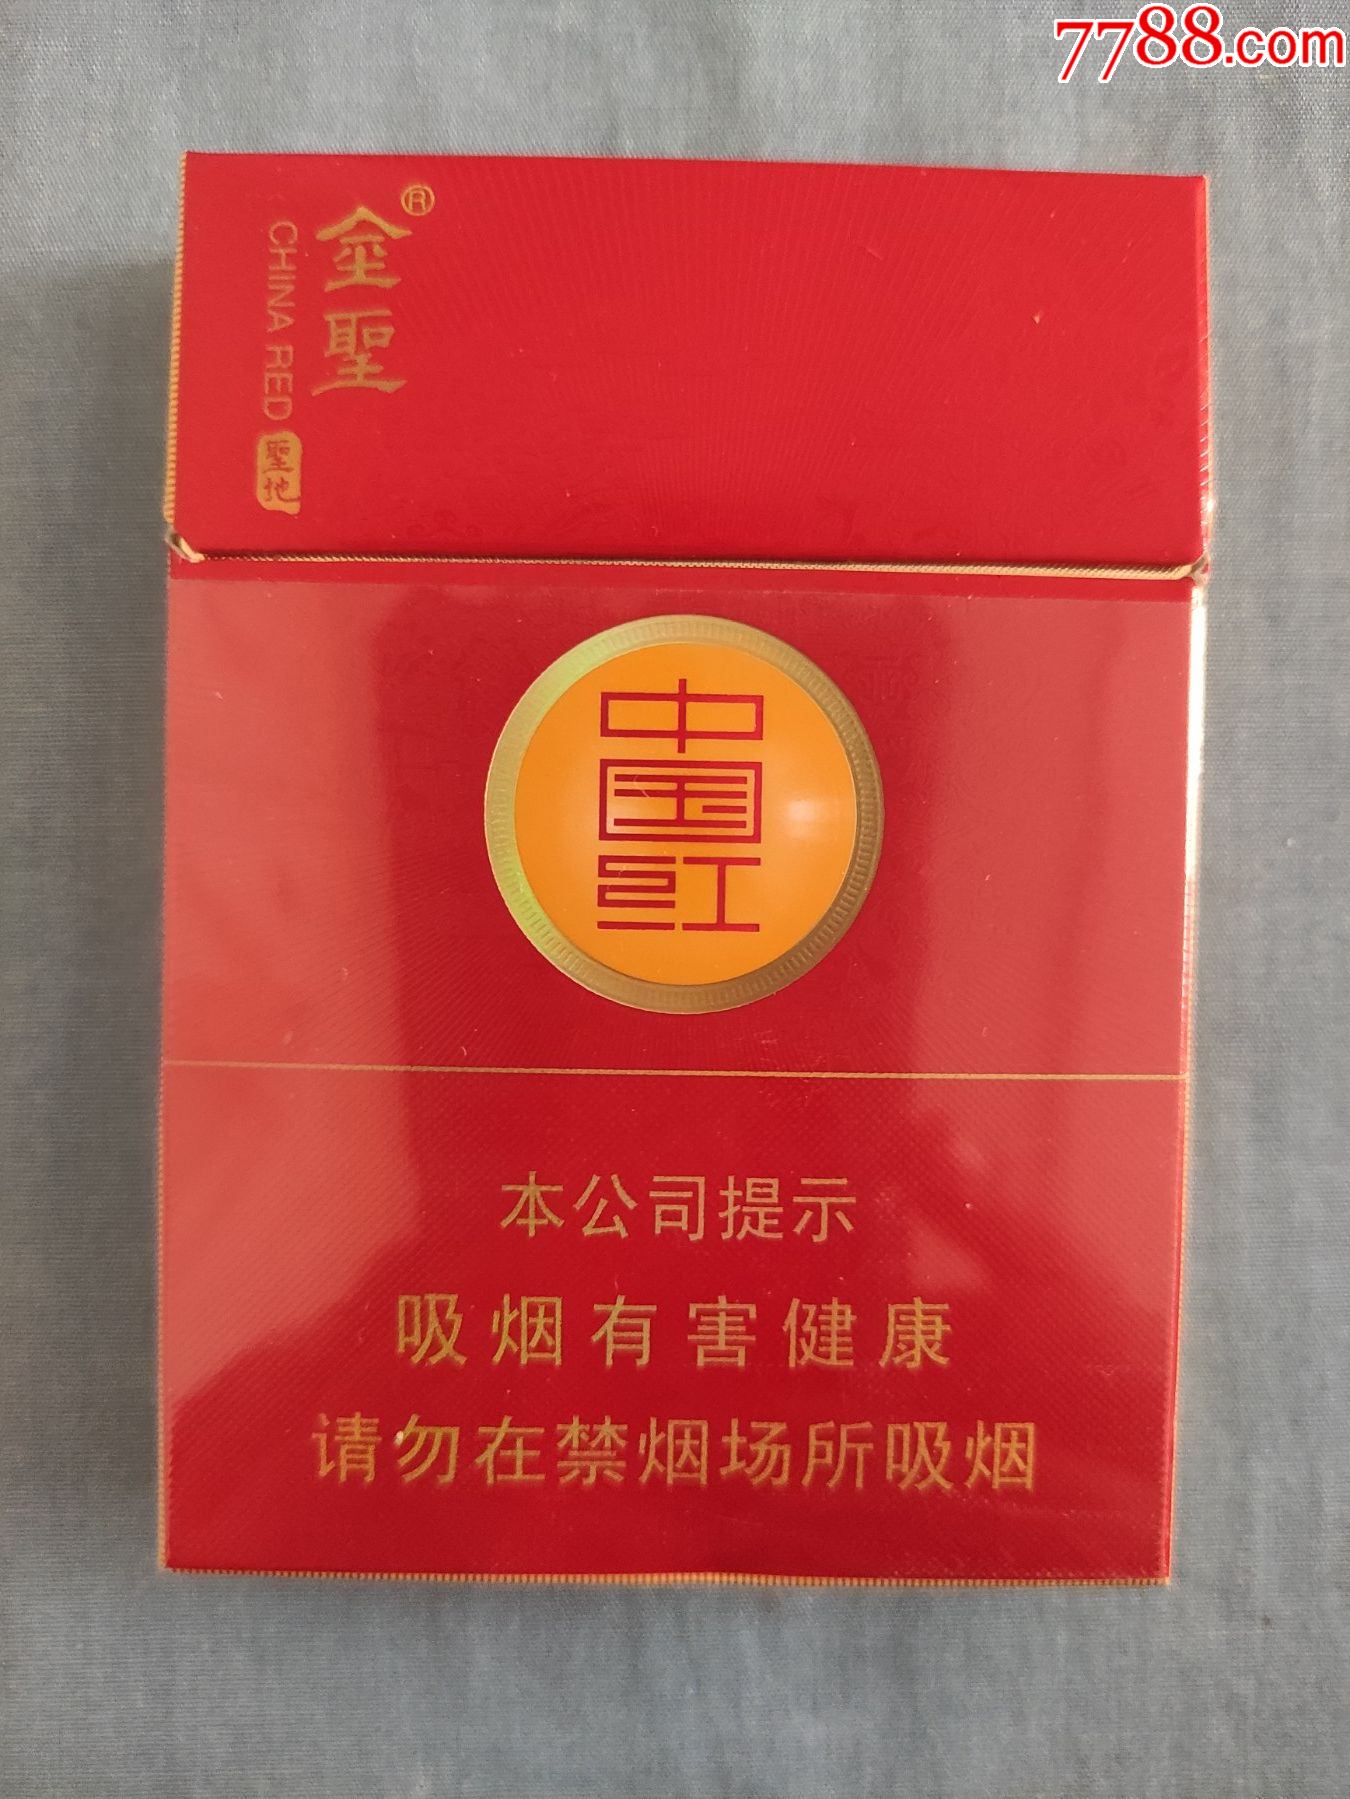 港版中国红香烟中支图片